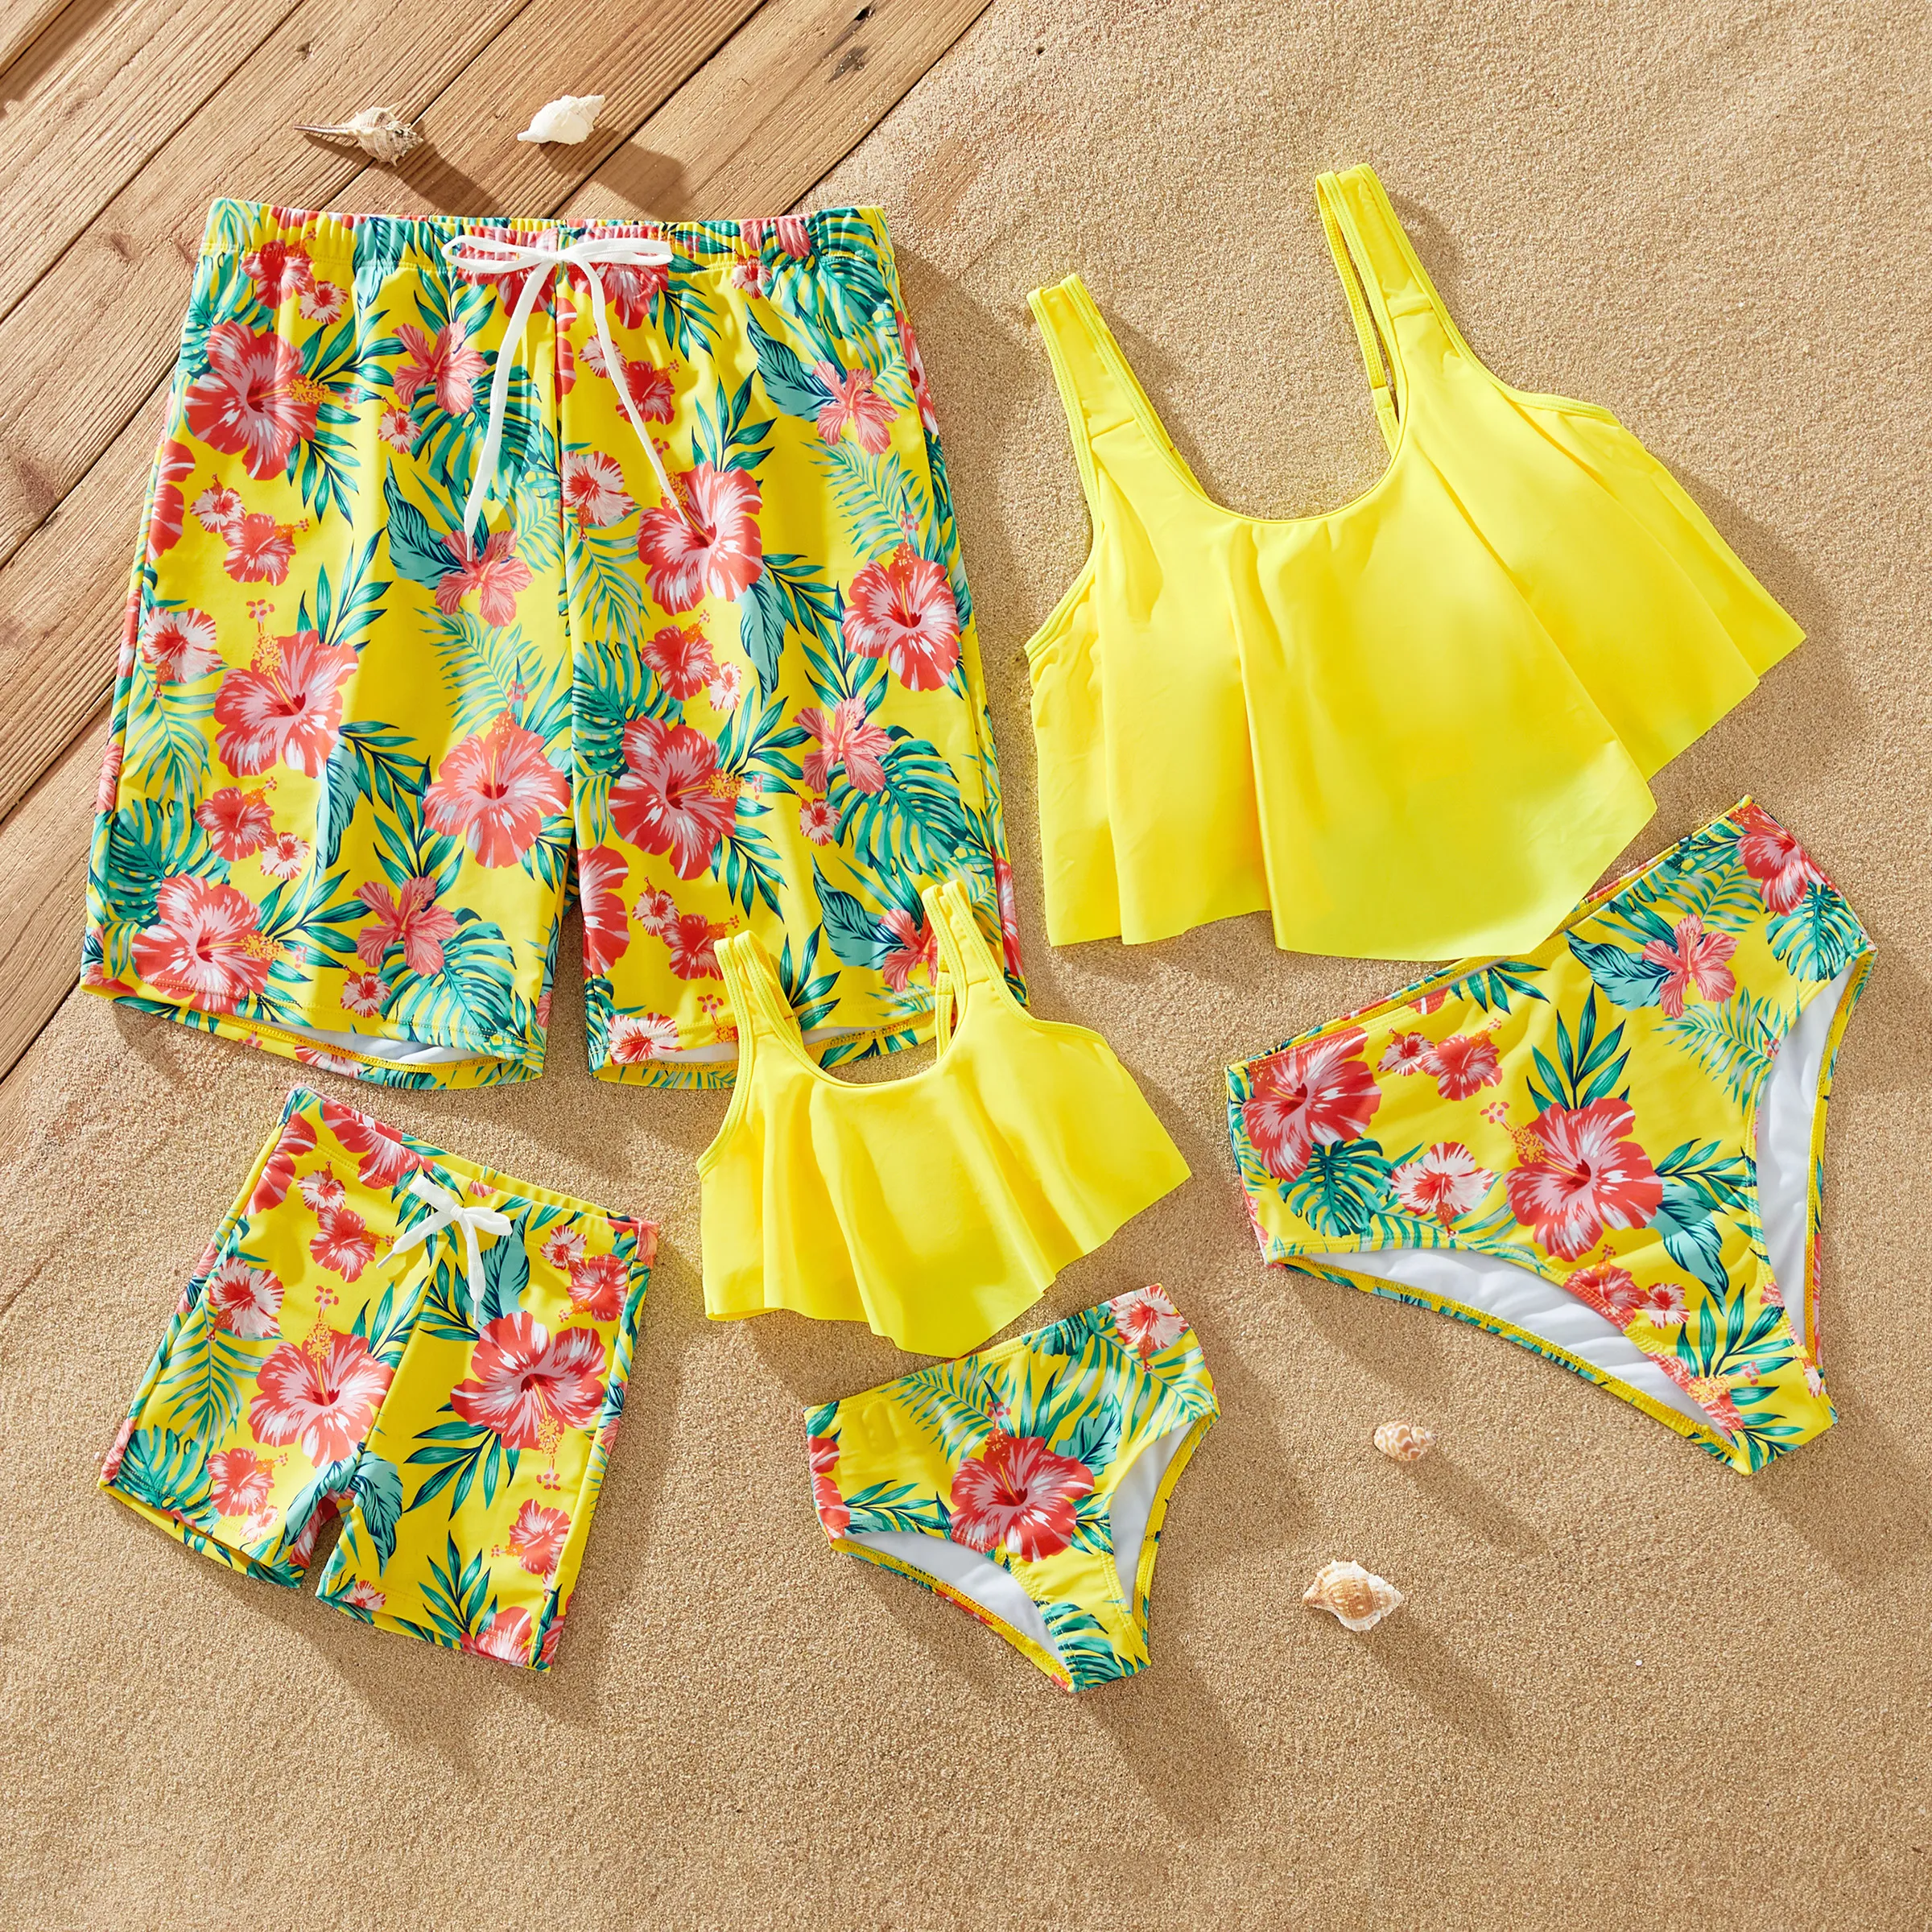 家庭配套黃色熱帶抽繩泳褲或飄逸荷葉邊兩件式泳衣